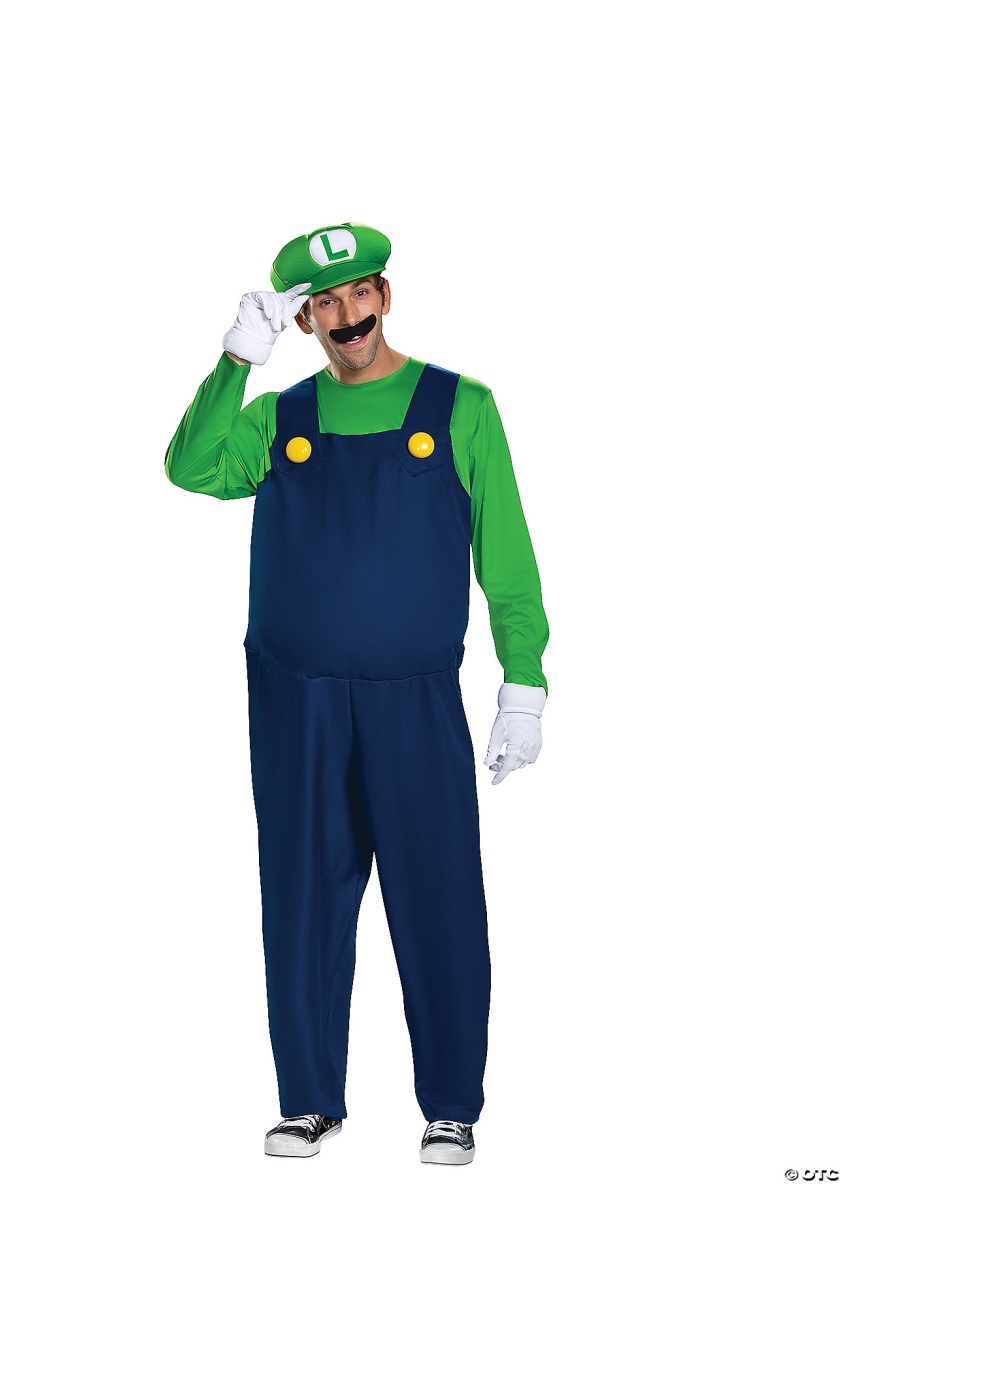  Mario Bros Luigi Costume